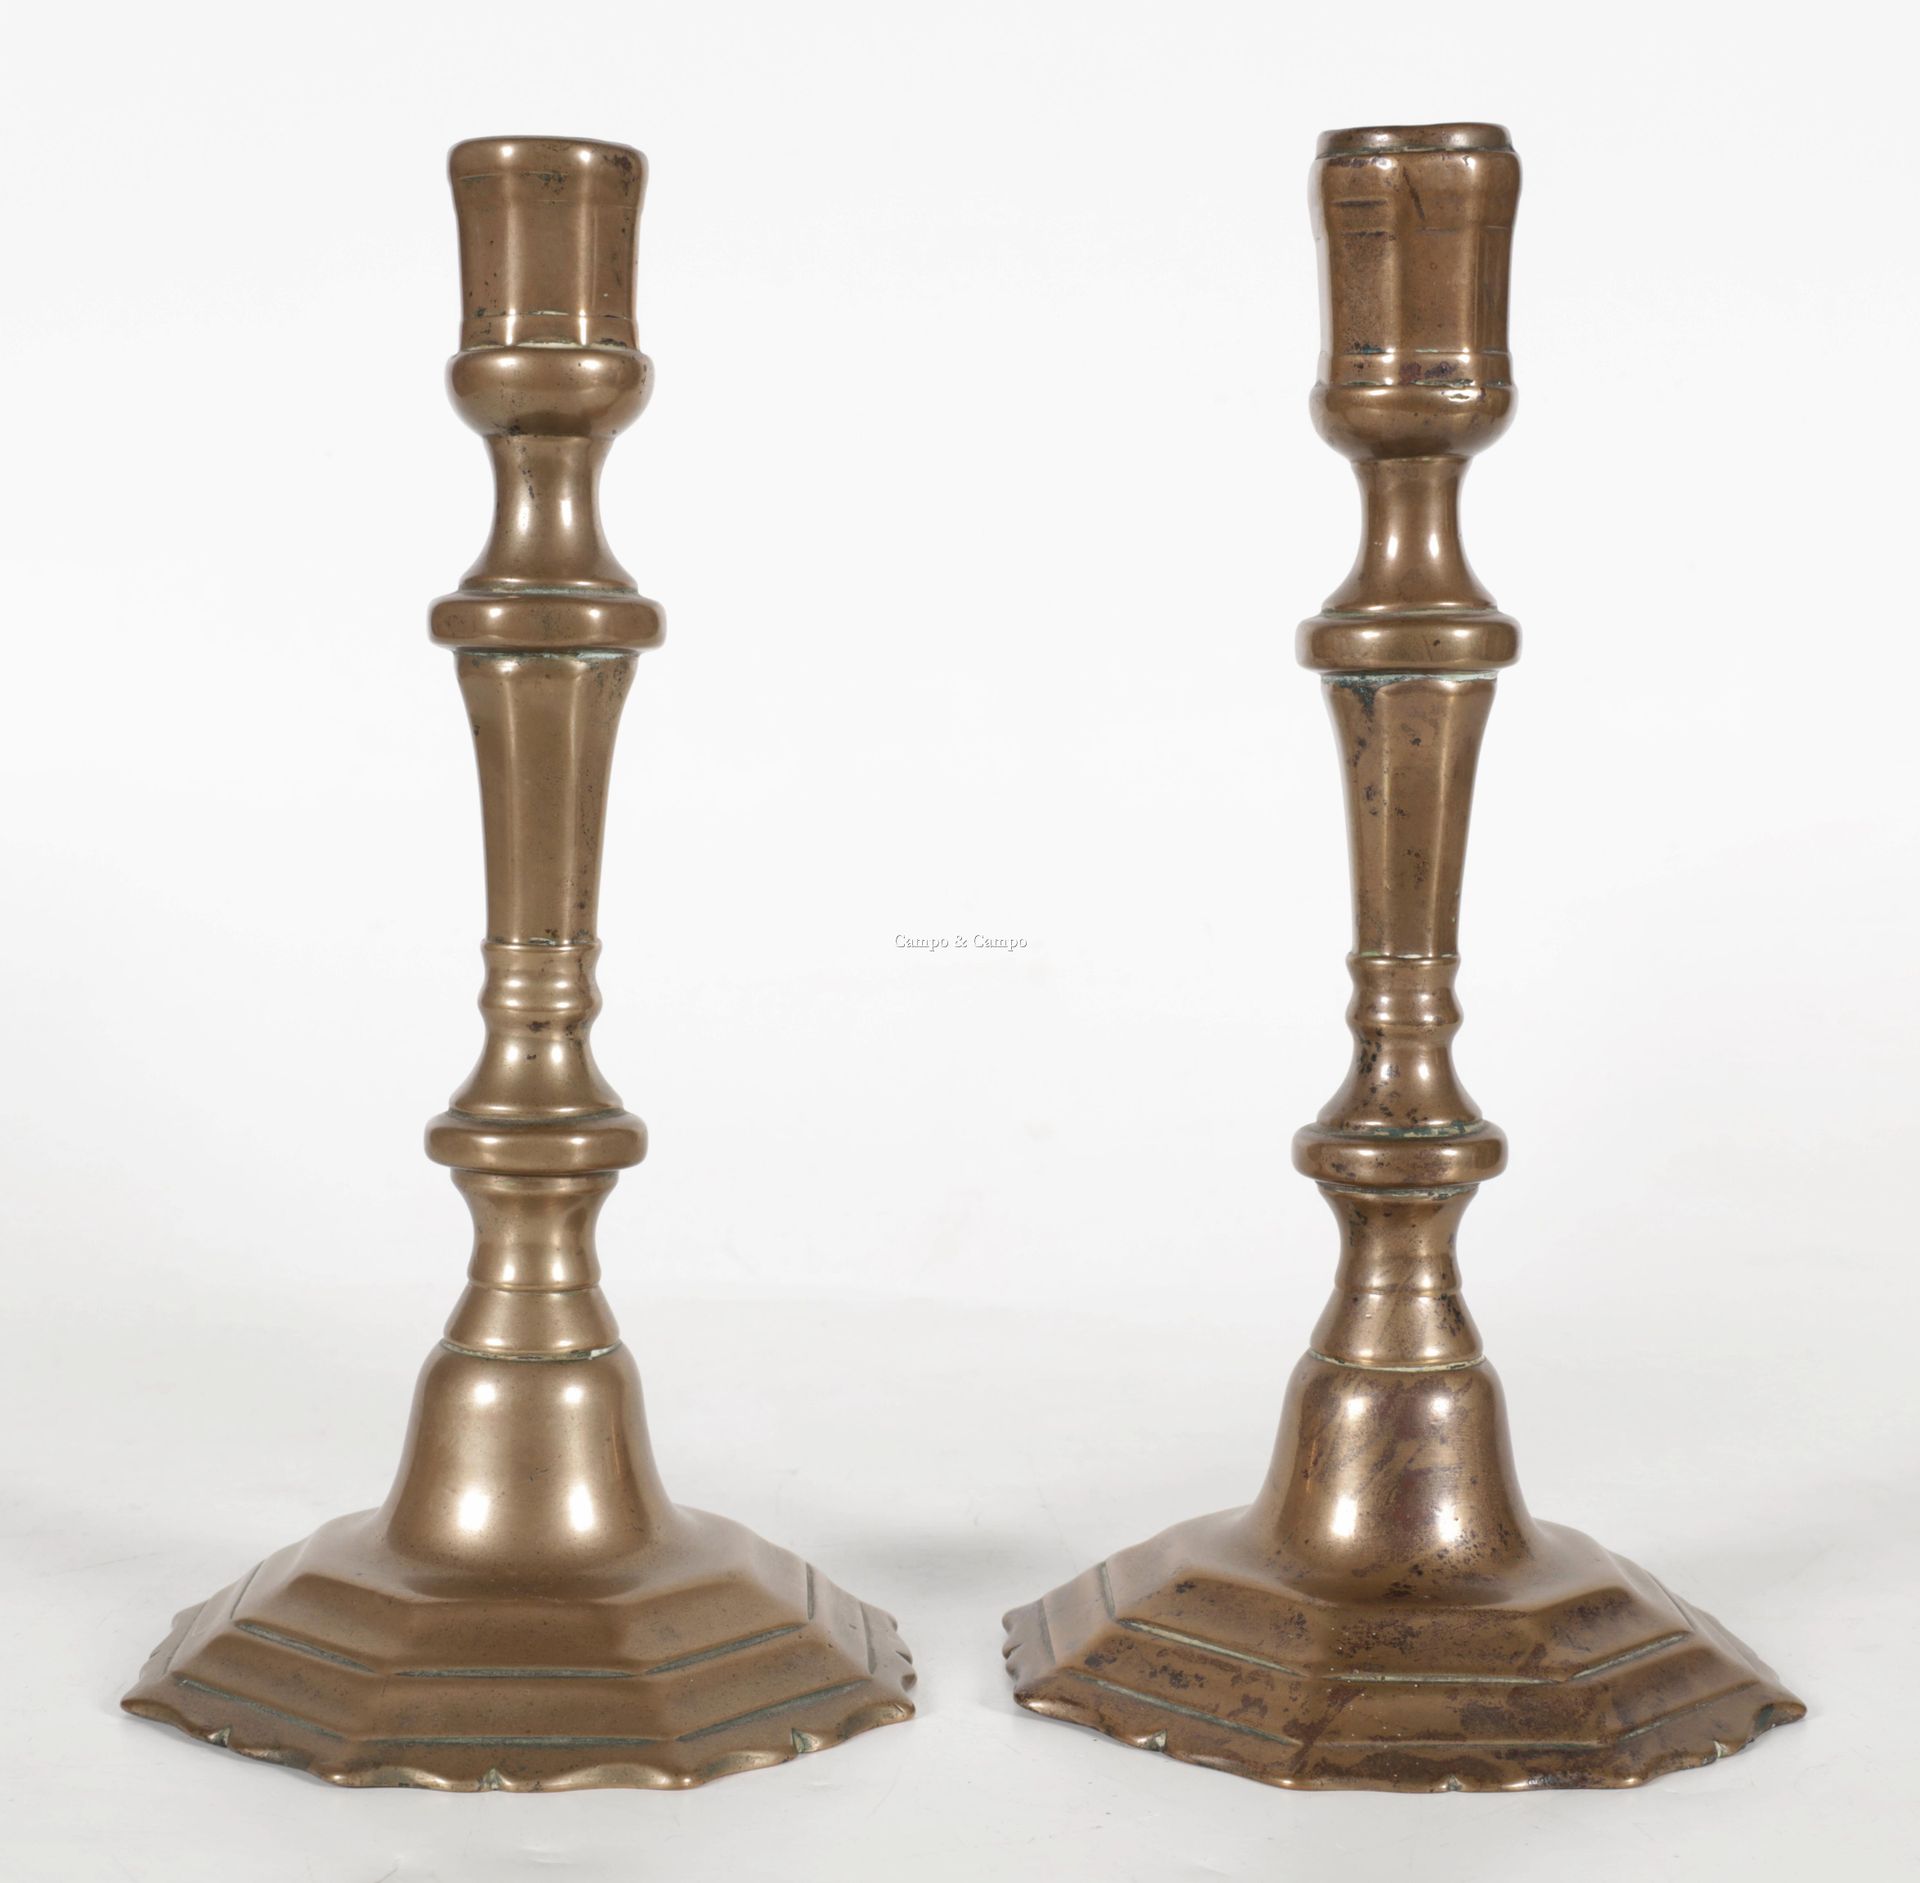 VARIA Par de candelabros de bronce con eje de balaustre, siglo XVIII
Paar bronze&hellip;